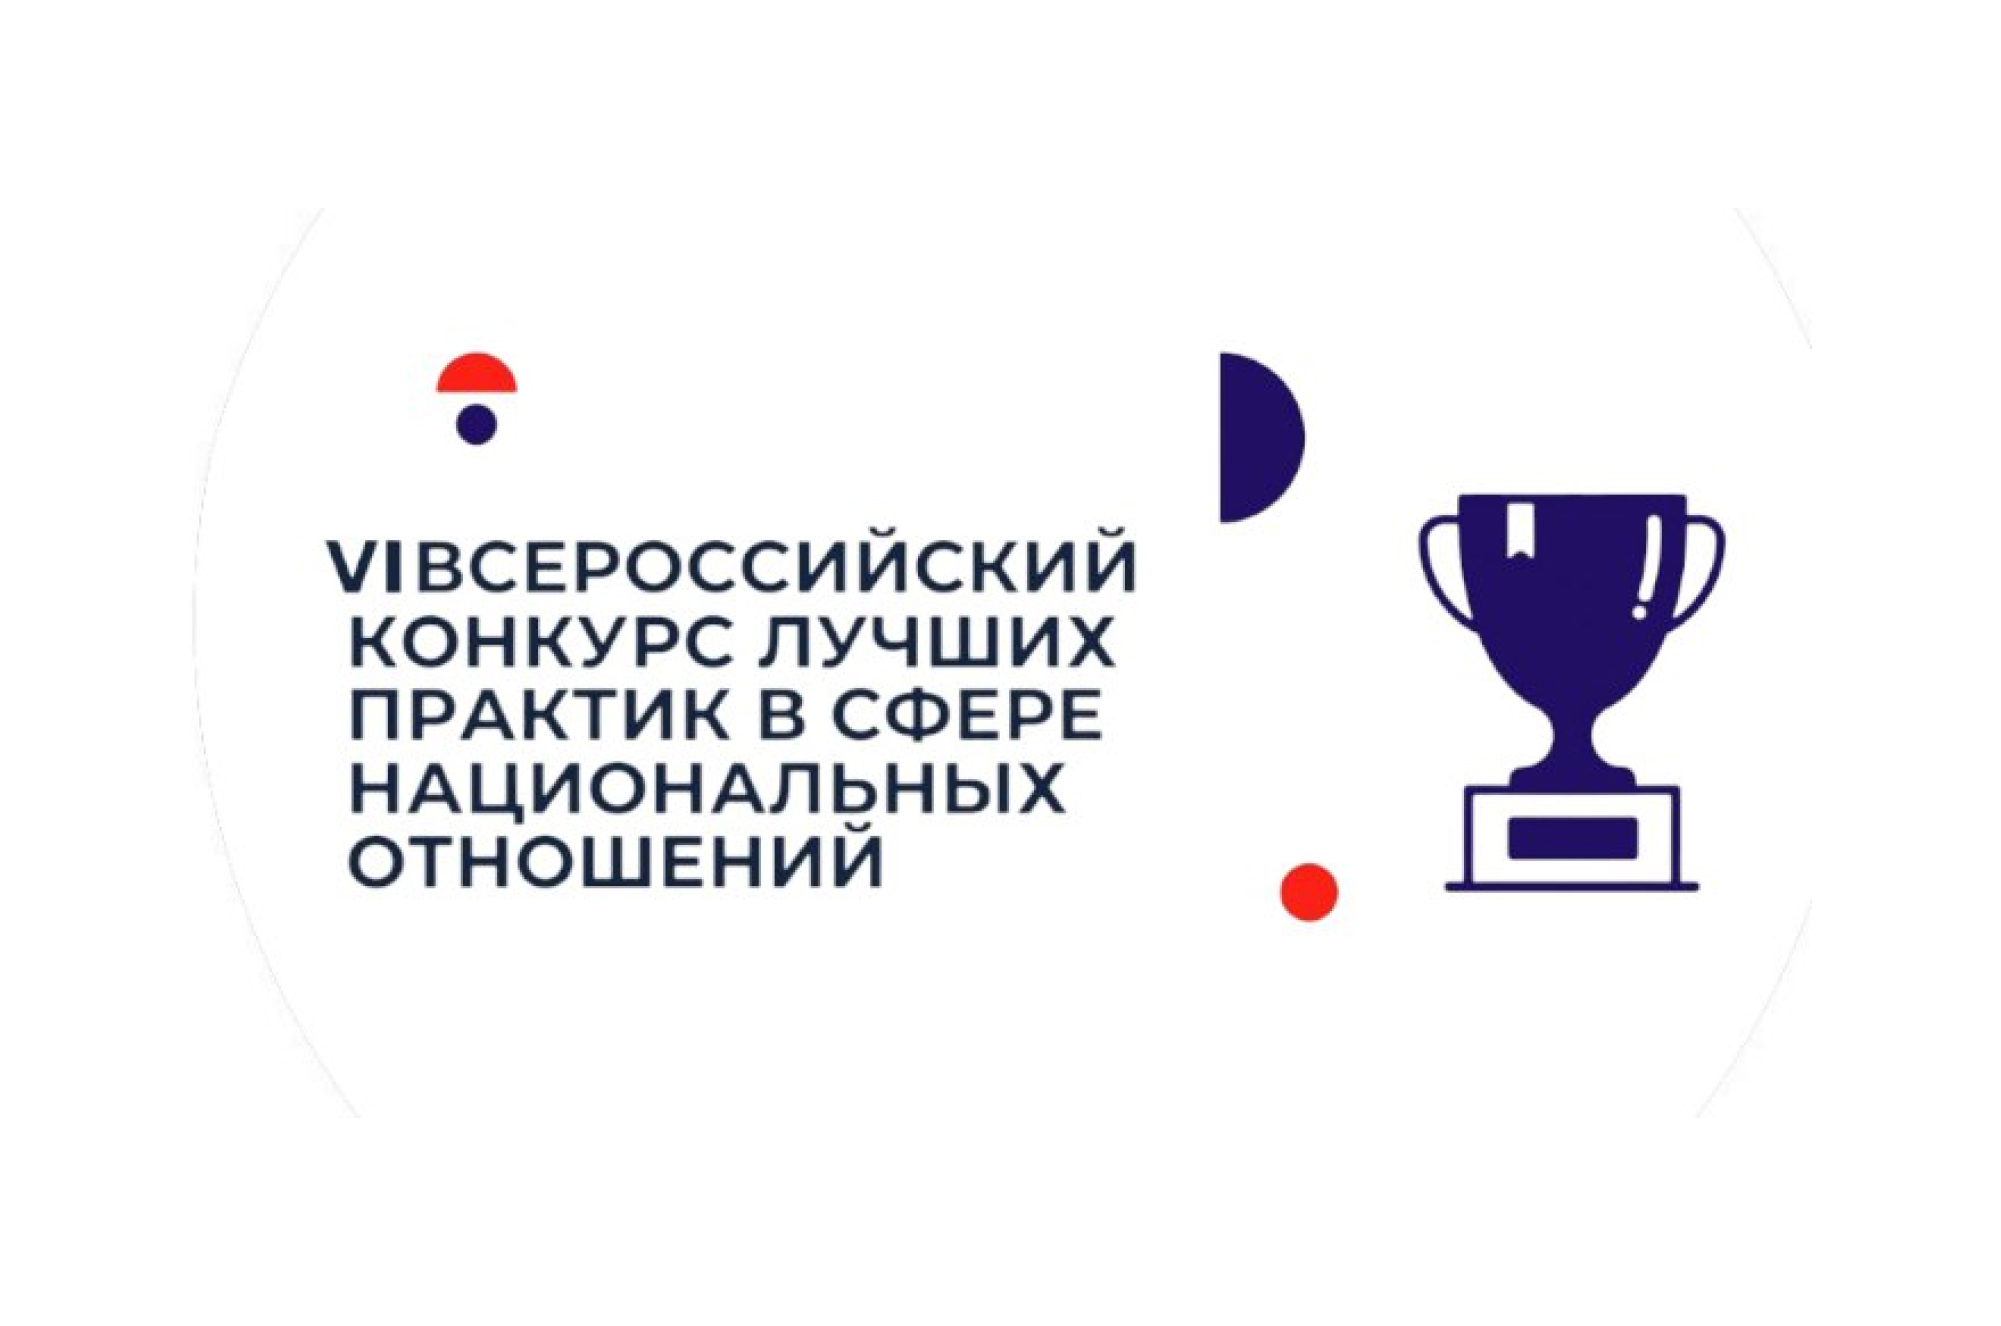 VI Всероссийский конкурс лучших практик в сфере национальных отношений.